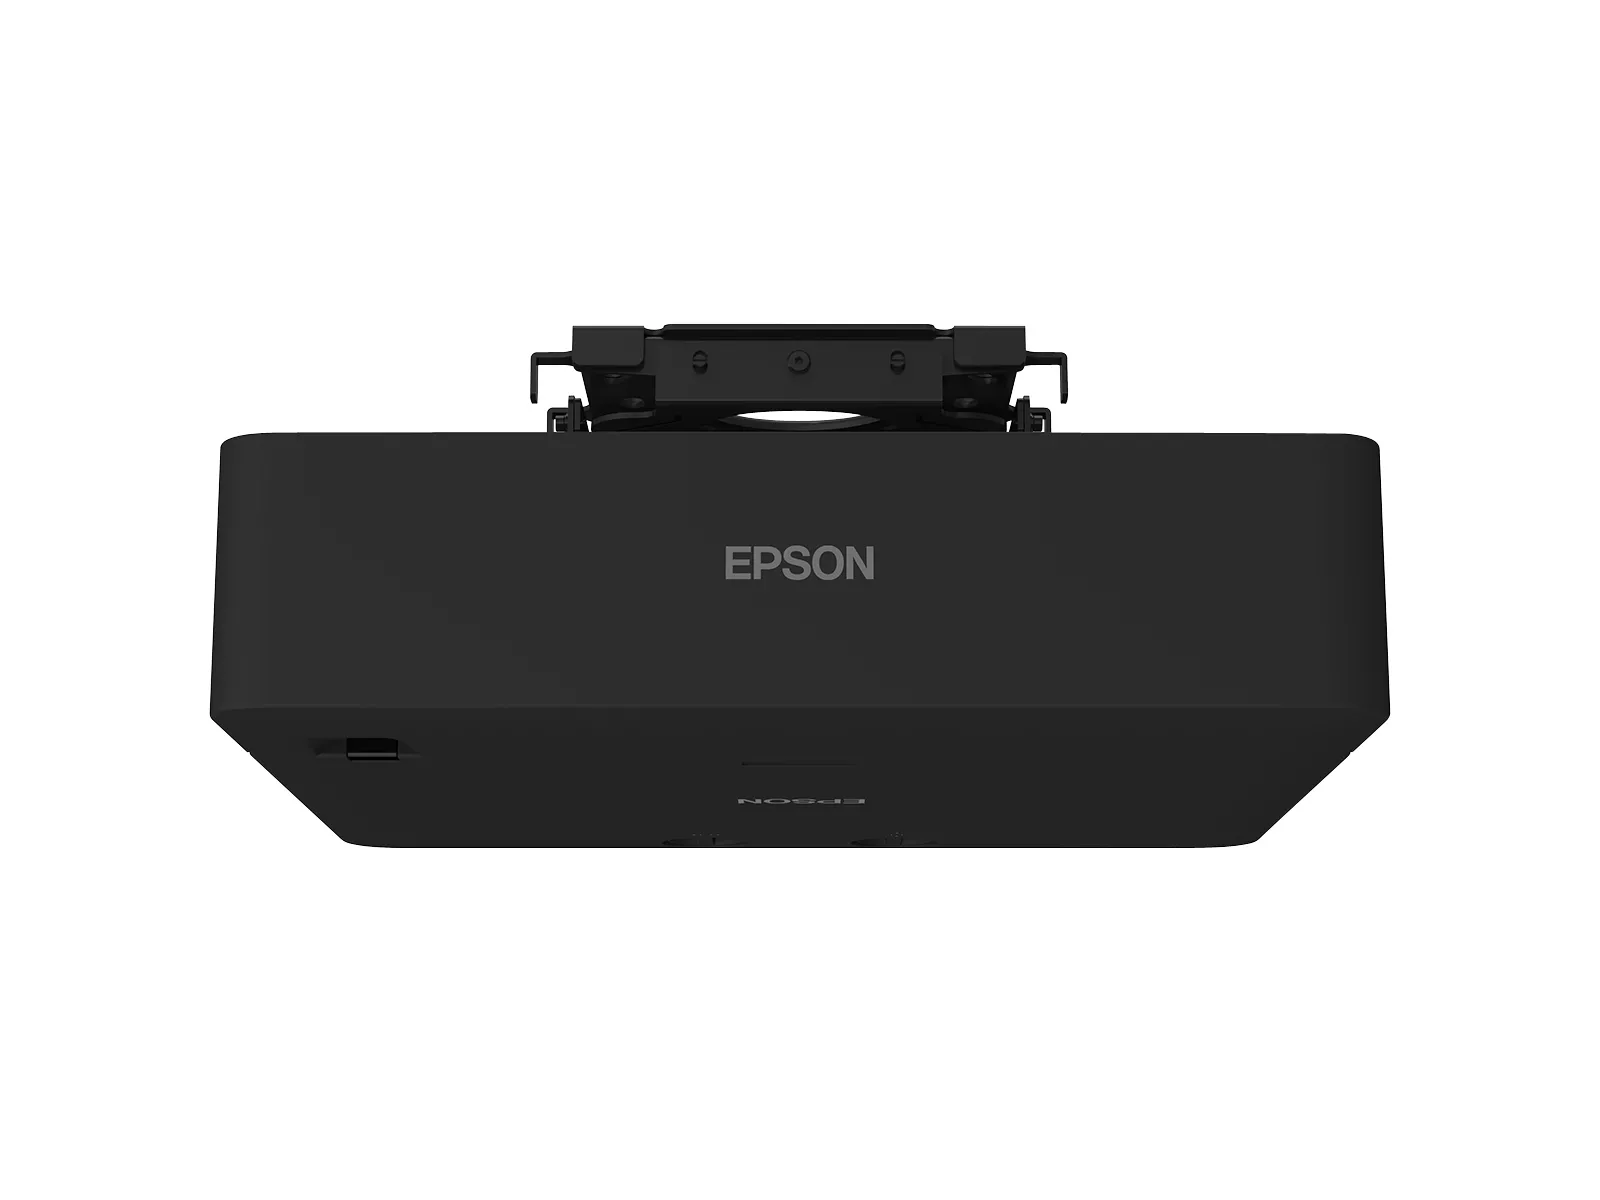 Vente EPSON EB-L775U Projector WUXGA 7000Lm projection ratio Epson au meilleur prix - visuel 6